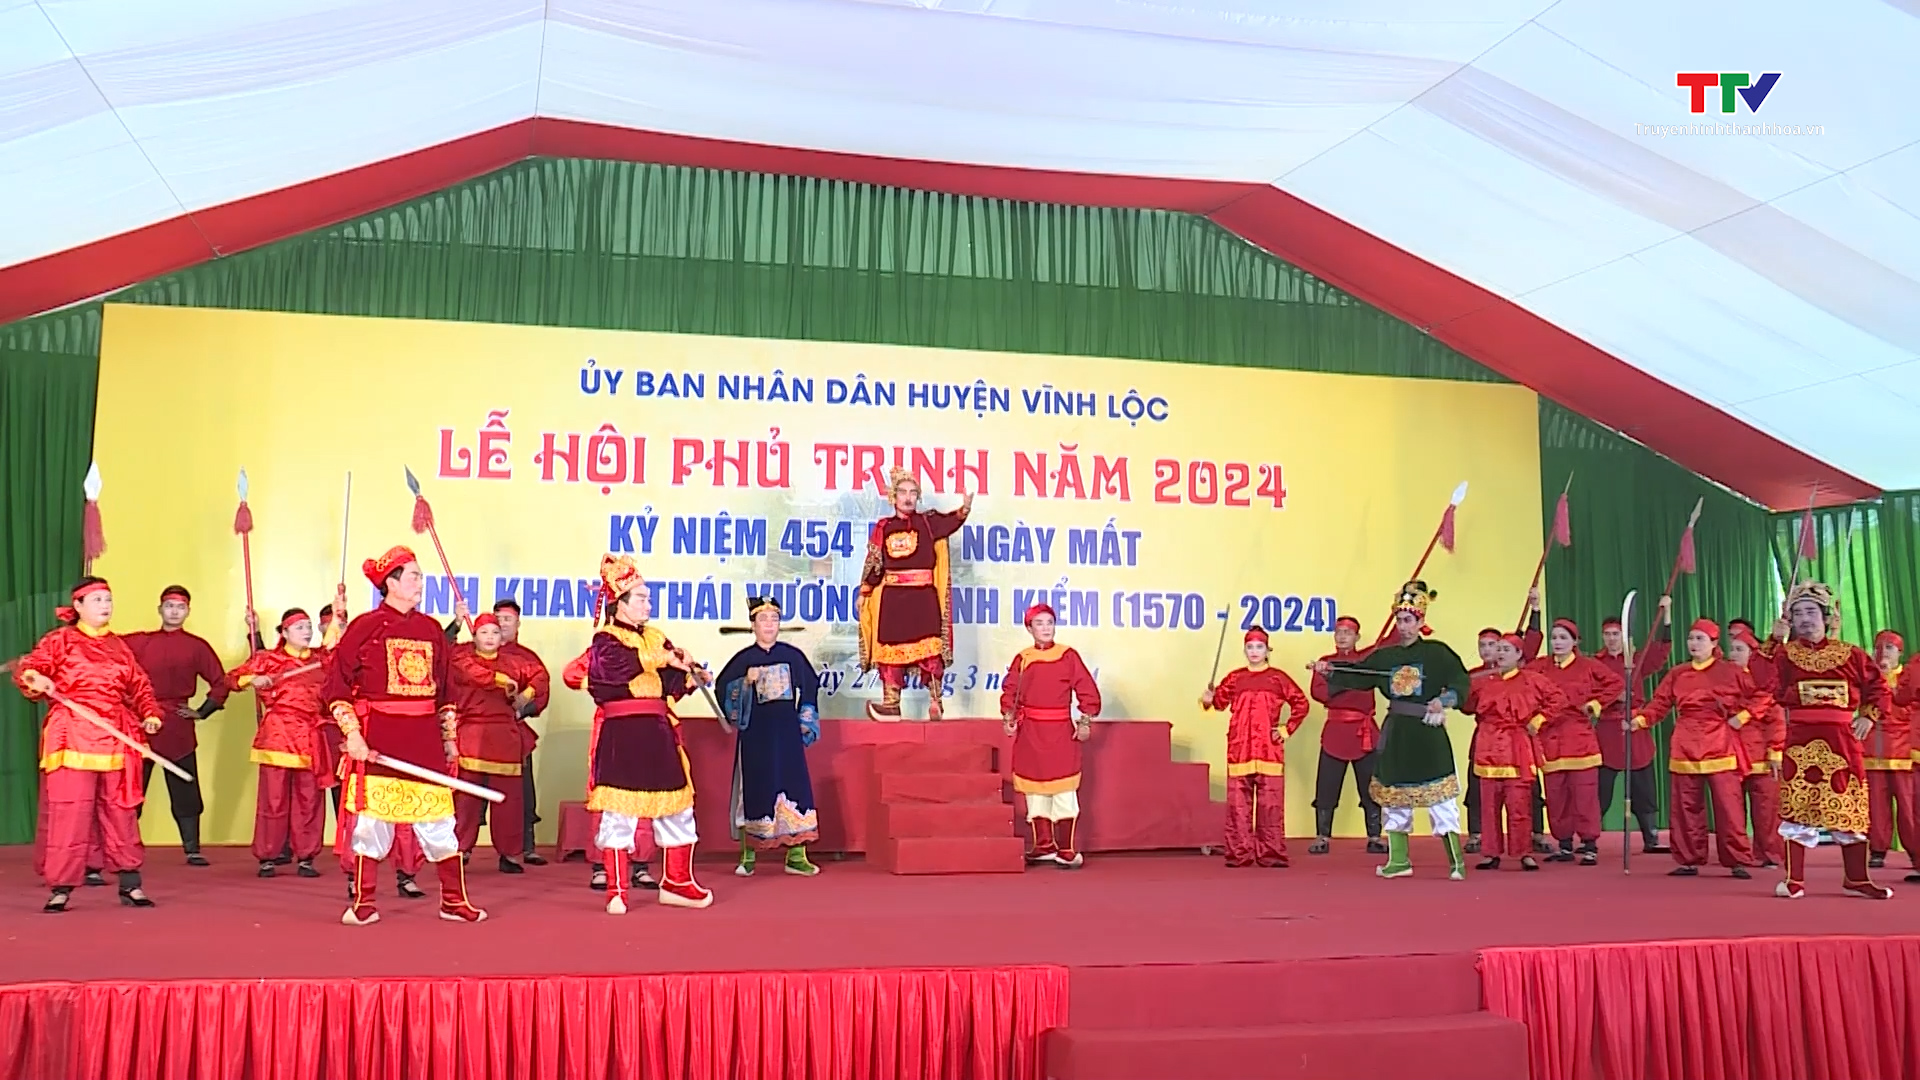 Lễ hội Phủ Trịnh năm 2024, kỷ niệm 454 năm ngày mất Minh Khang Thái Vương Trịnh Kiểm- Ảnh 1.